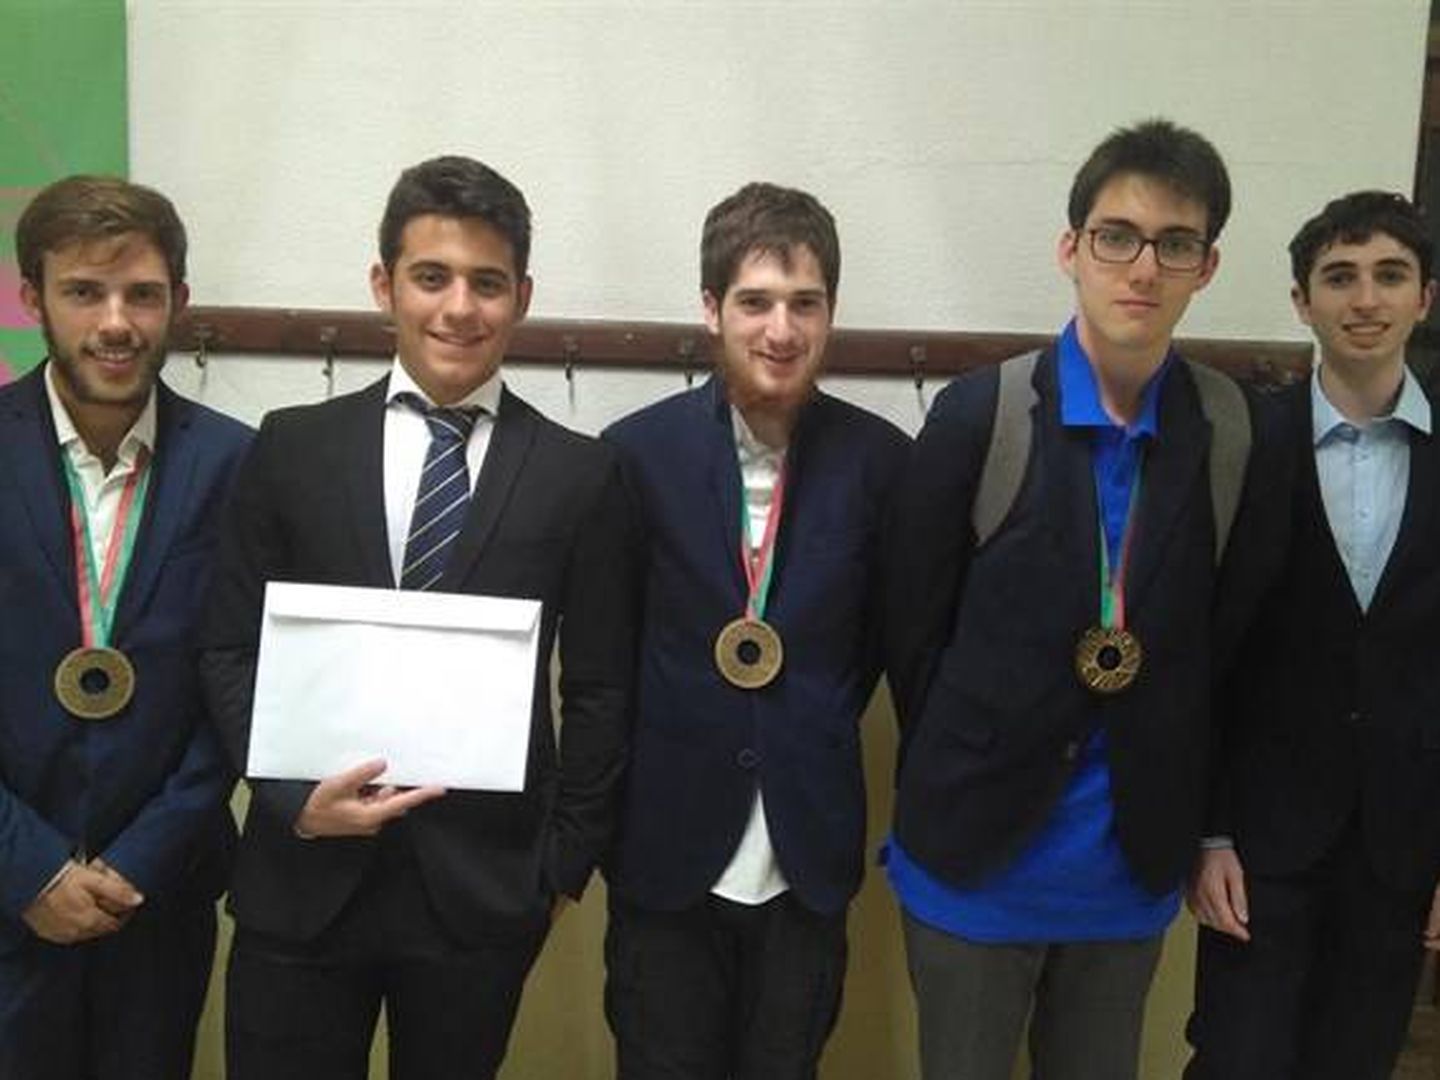 Los cinco estudiantes españoles que han ido a la Olimpiada Internacional. de Física (Foto: Real Sociedad Española de Física)